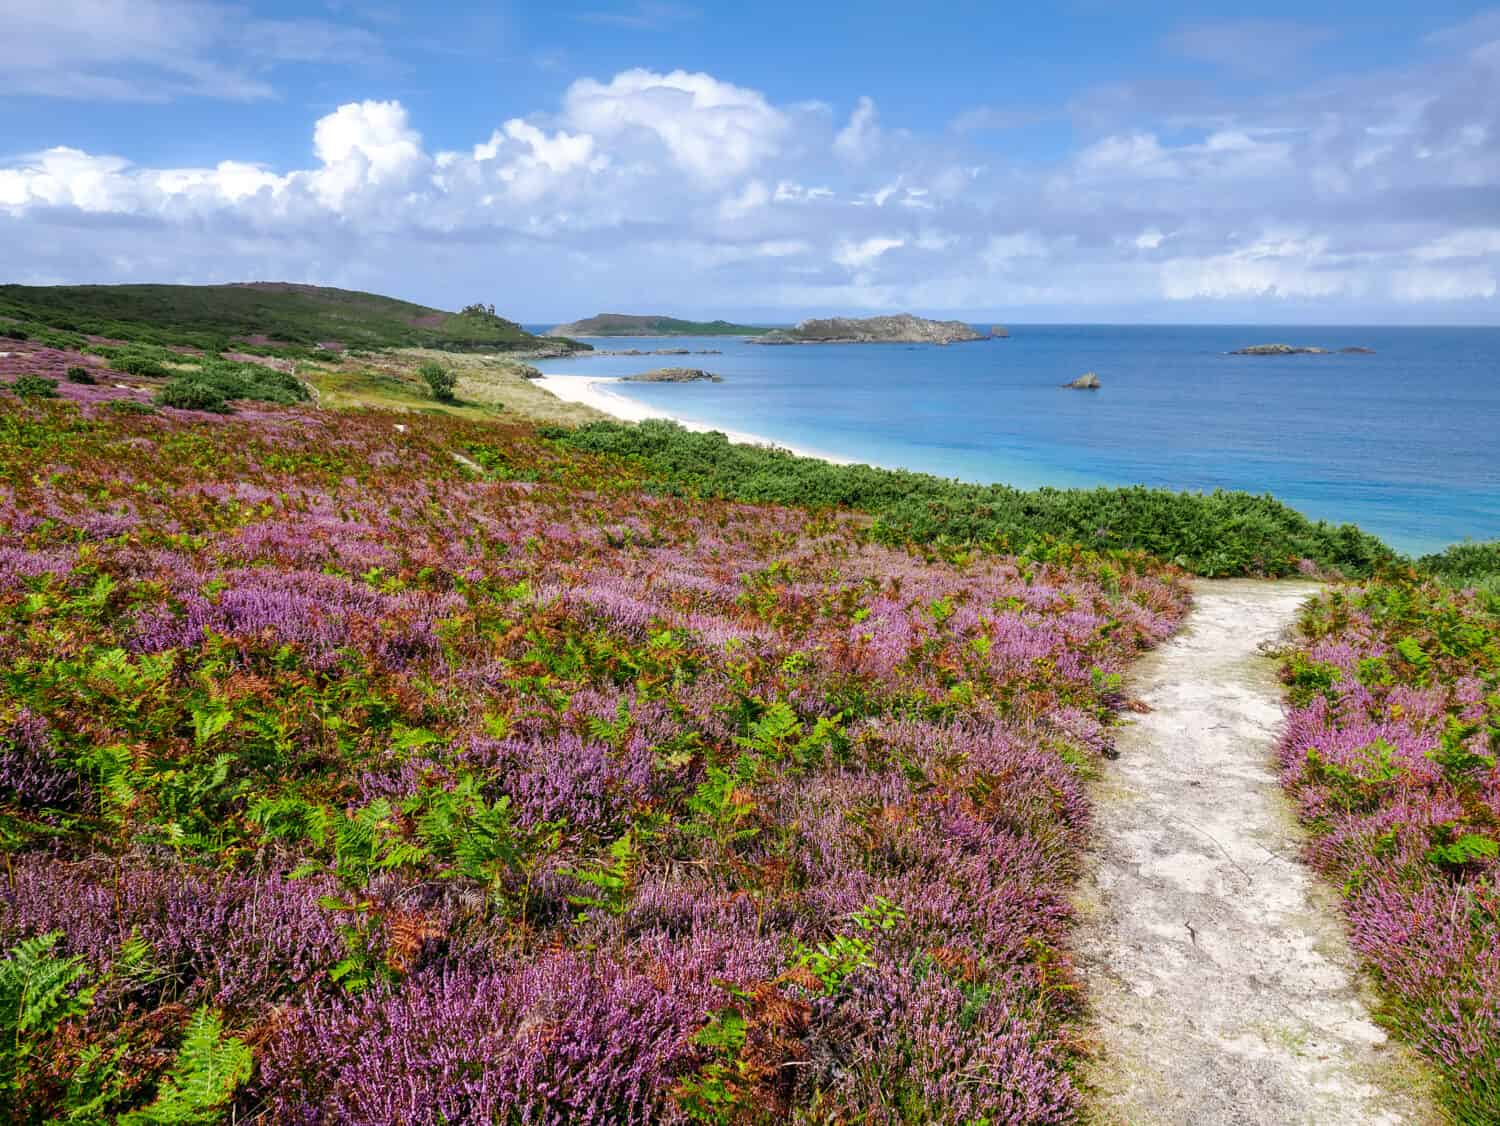 Sentiero panoramico che conduce a Great Bay sull'isola di St Martin, che mostra la bellezza naturale e il fascino costiero delle isole Scilly, in Inghilterra